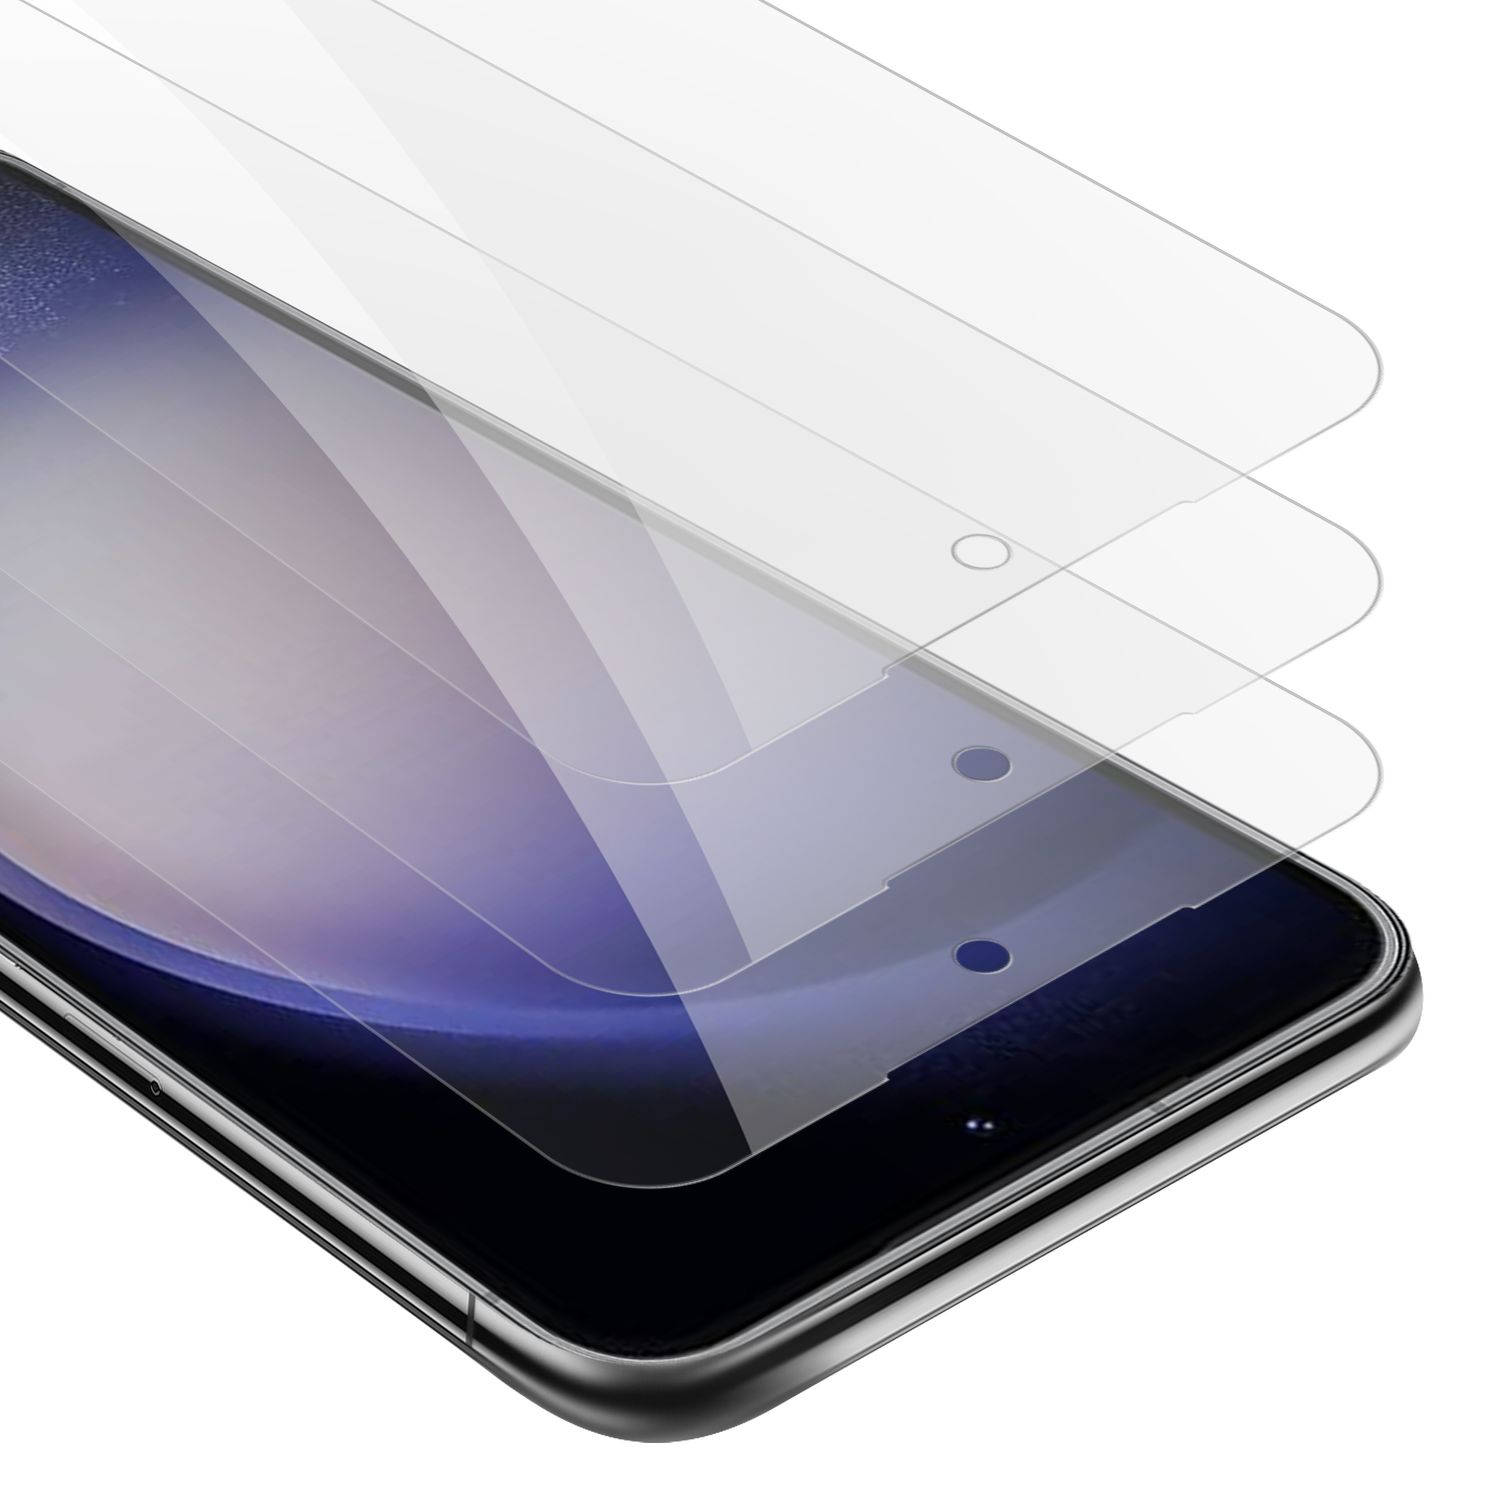 Cadorabo 3x Screenprotector voor Samsung Galaxy S23 PLUS - Beschermende Pantser Film in KRISTALHELDER - Getemperd (Tempered) Display beschermend glas in 9H hardheid met 3D Touch